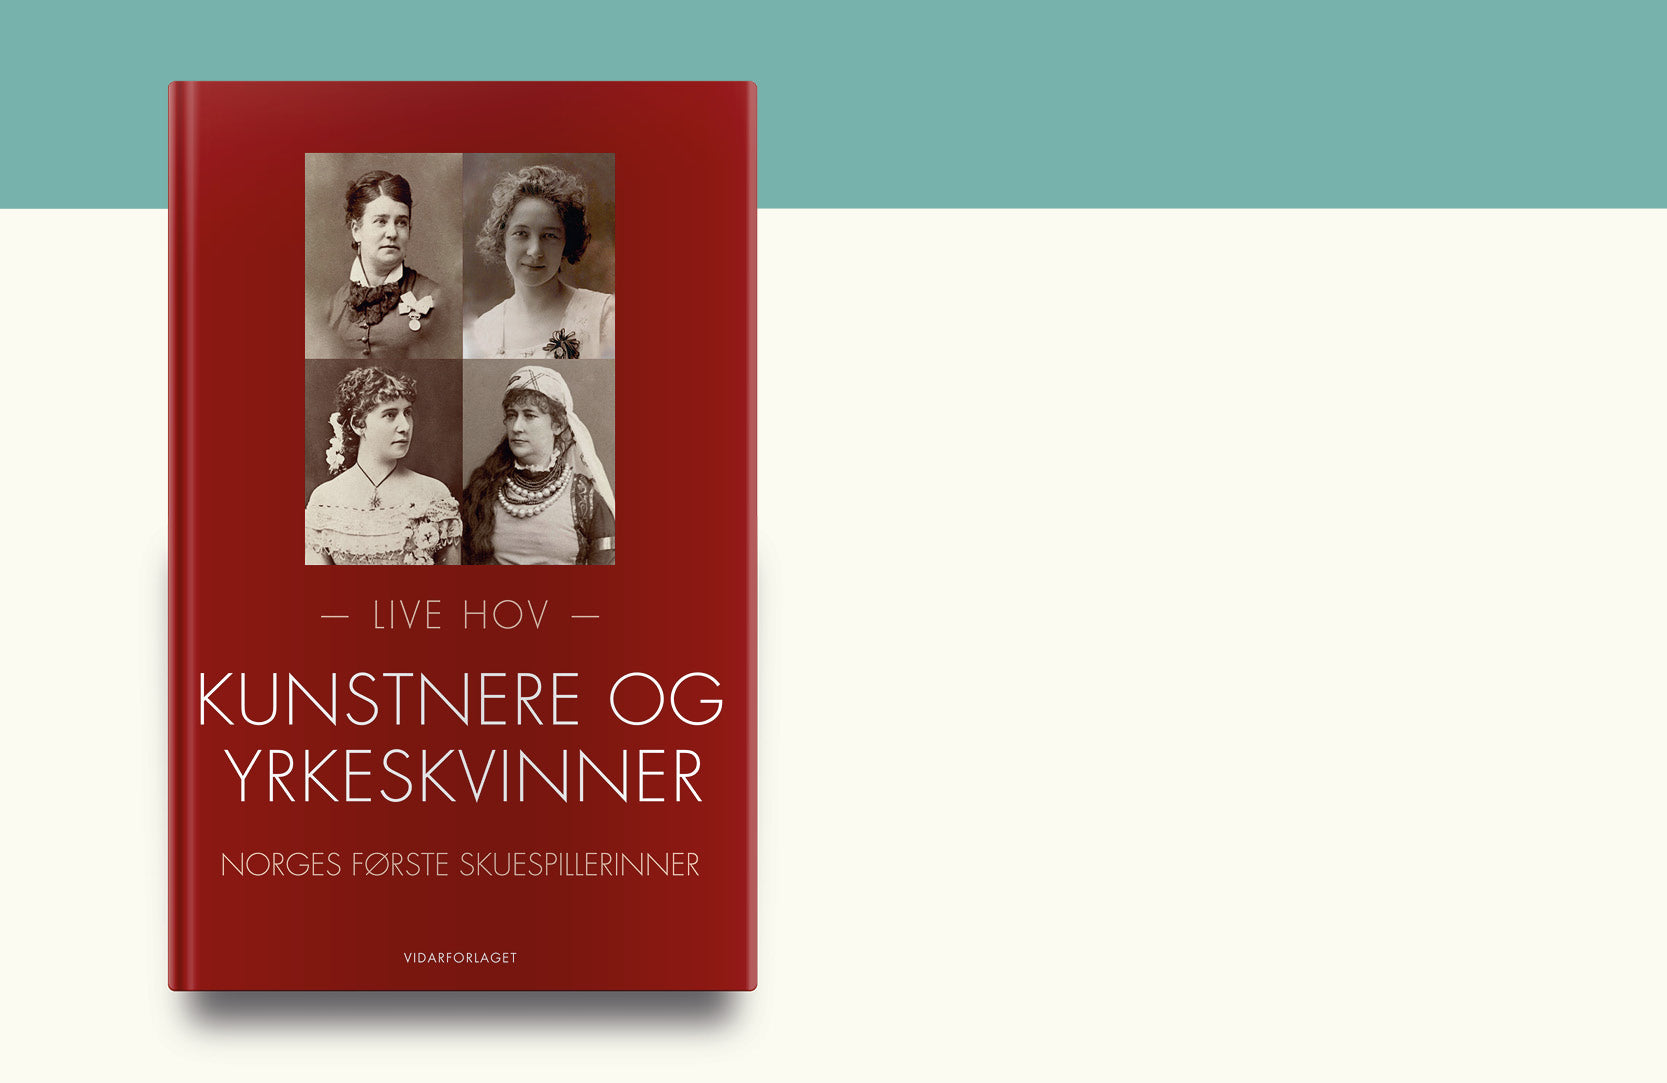 Norges første skuespillerinner – historisk kvinnekamp i teatrene